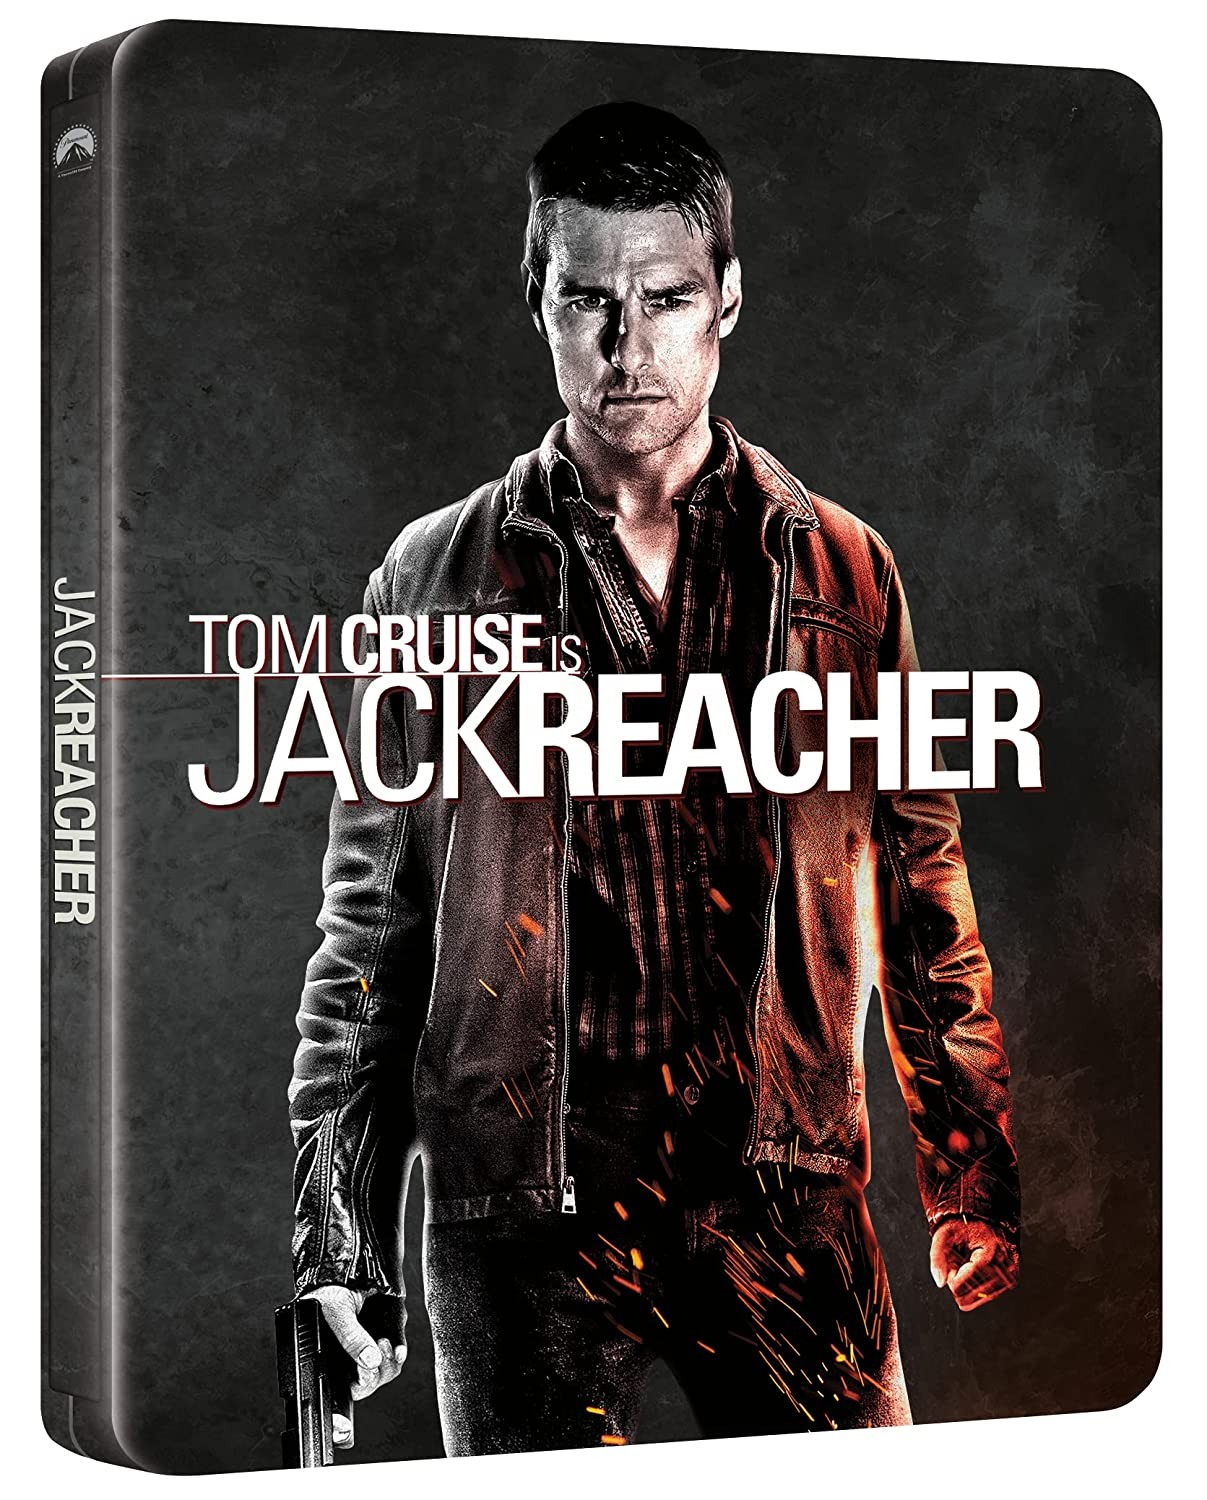 Jack Reacher: Jednym strzałem steelbook 4K UHD